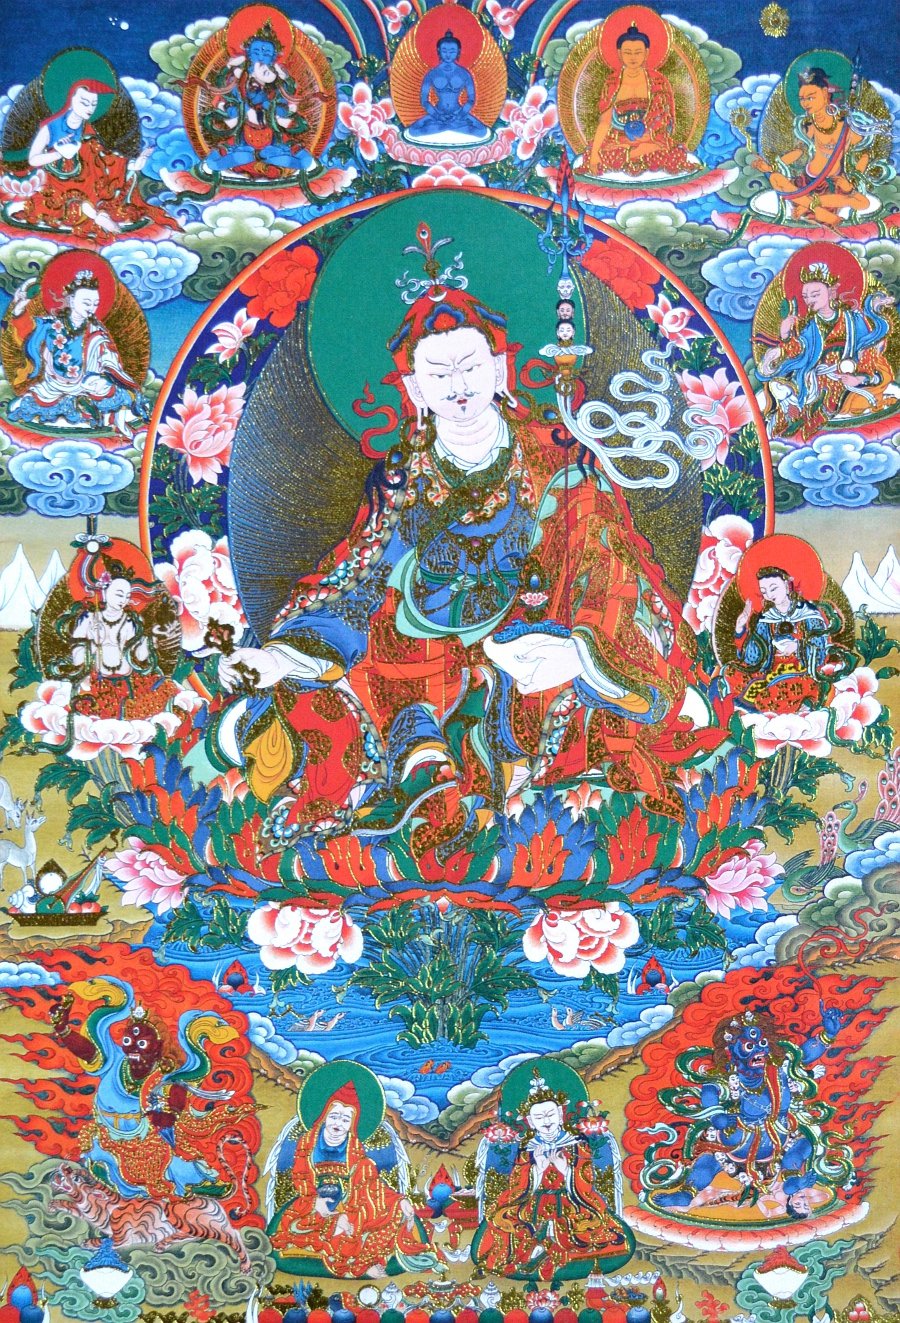 Тханка Гуру Падмасамбхава (печатная, тханка 39,5 х 62 см, изображение 20,5 х 30 см), 39,5 х 62 см, изображение: 20,5 х 30 см